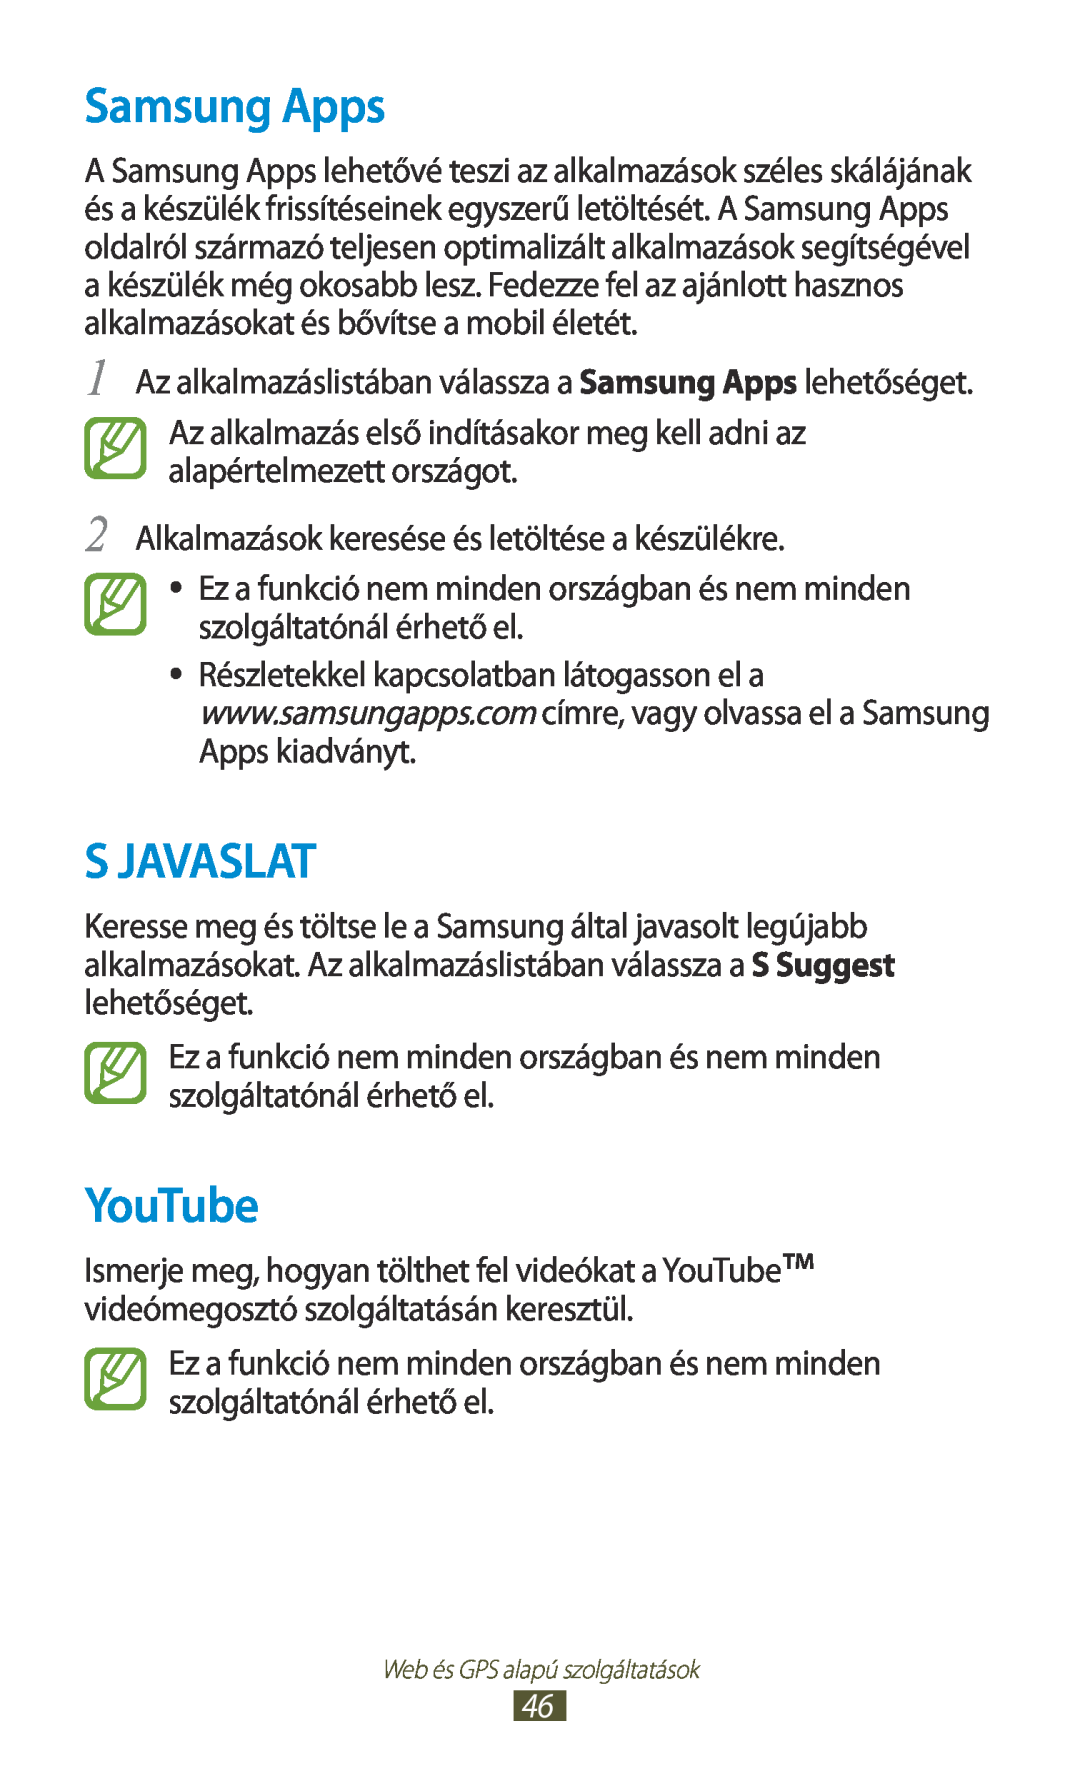 Samsung GT-P3110TSAAUT, GT-P3110TSAXEO, GT-P3110ZWAATO, GT-P3110TSAEUR, GT-P3110TSADBT manual Samsung Apps, S Javaslat, YouTube 